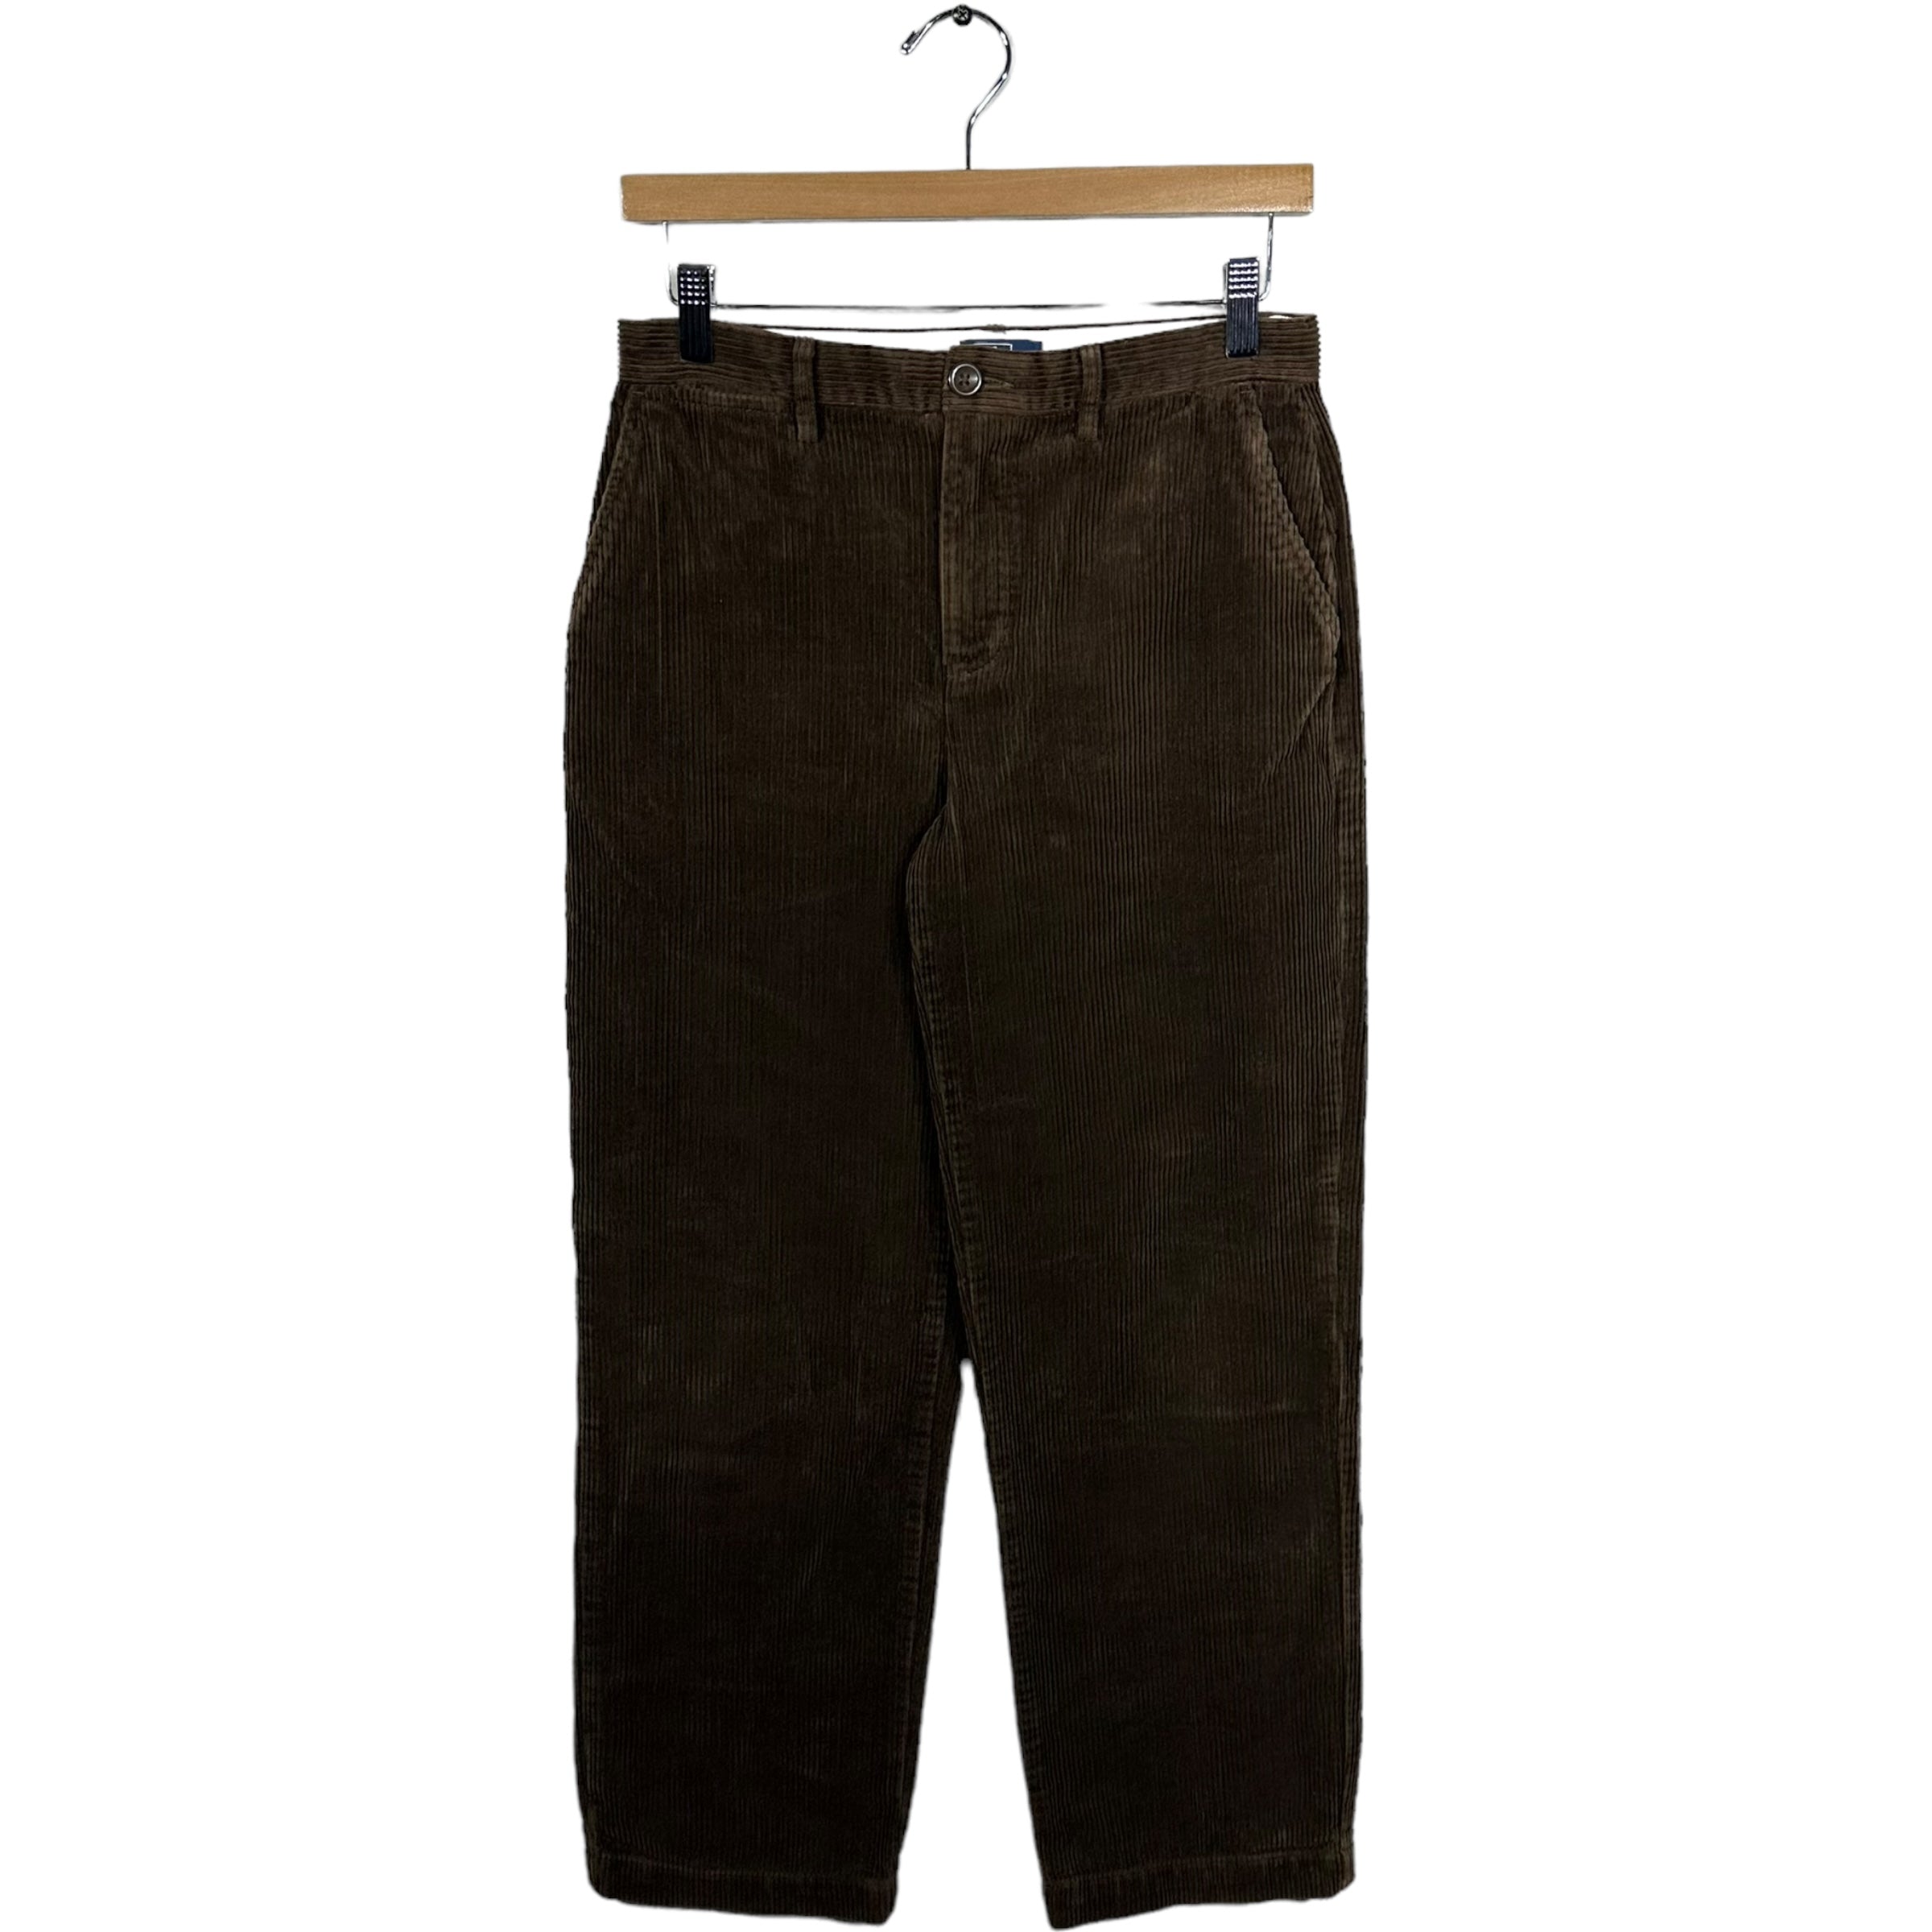 Vintage Ralph Lauren Corduroy Pants